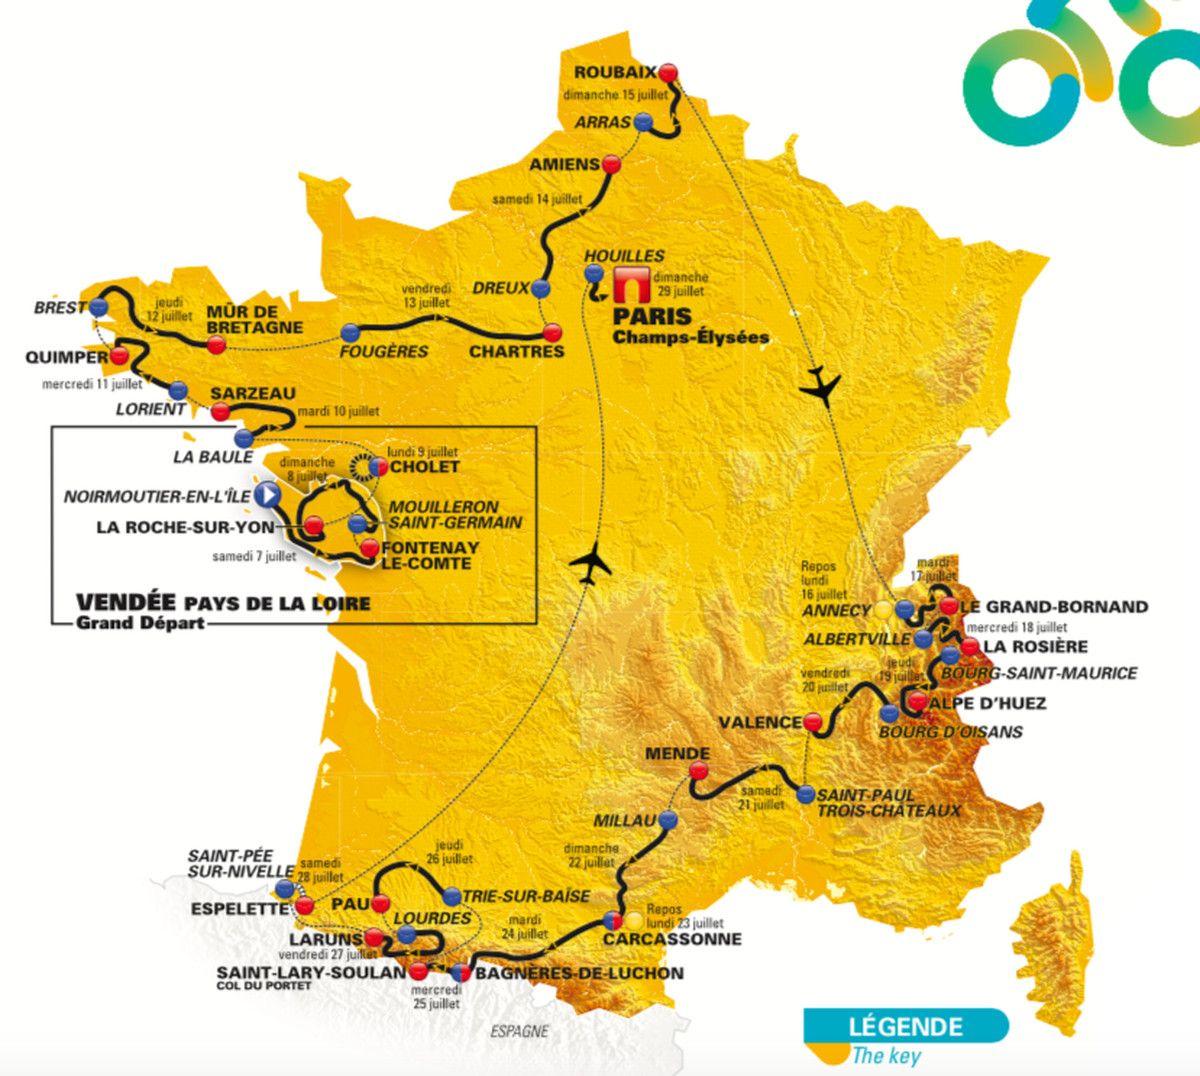 Tour De France 2018: Schedule, TV Live Stream Options, Map